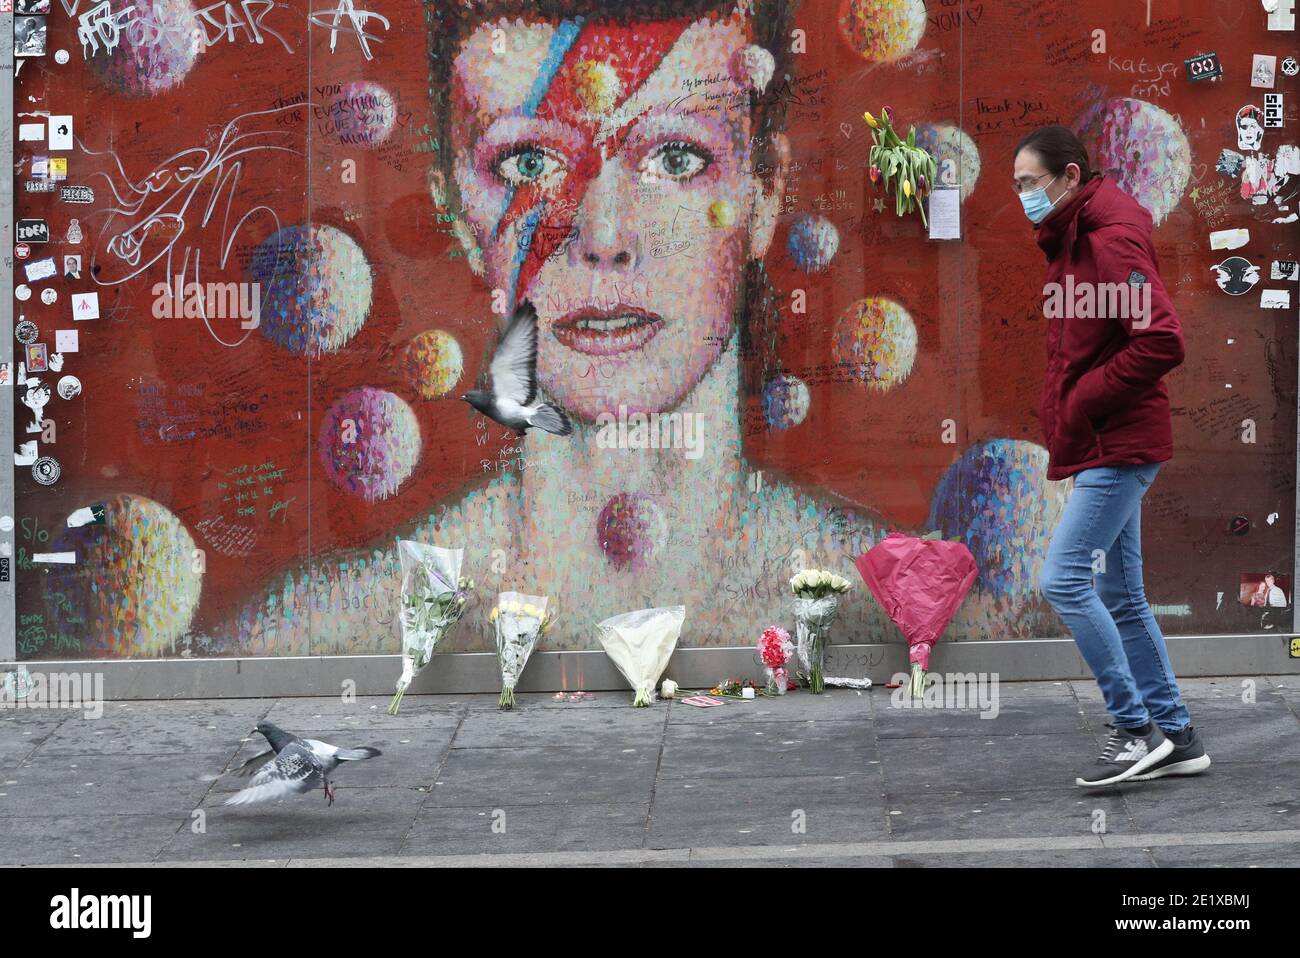 Une personne se mue devant la fresque David Bowie à Brixton, dans le sud de Londres, à l'occasion du cinquième anniversaire de la mort du chanteur. Banque D'Images